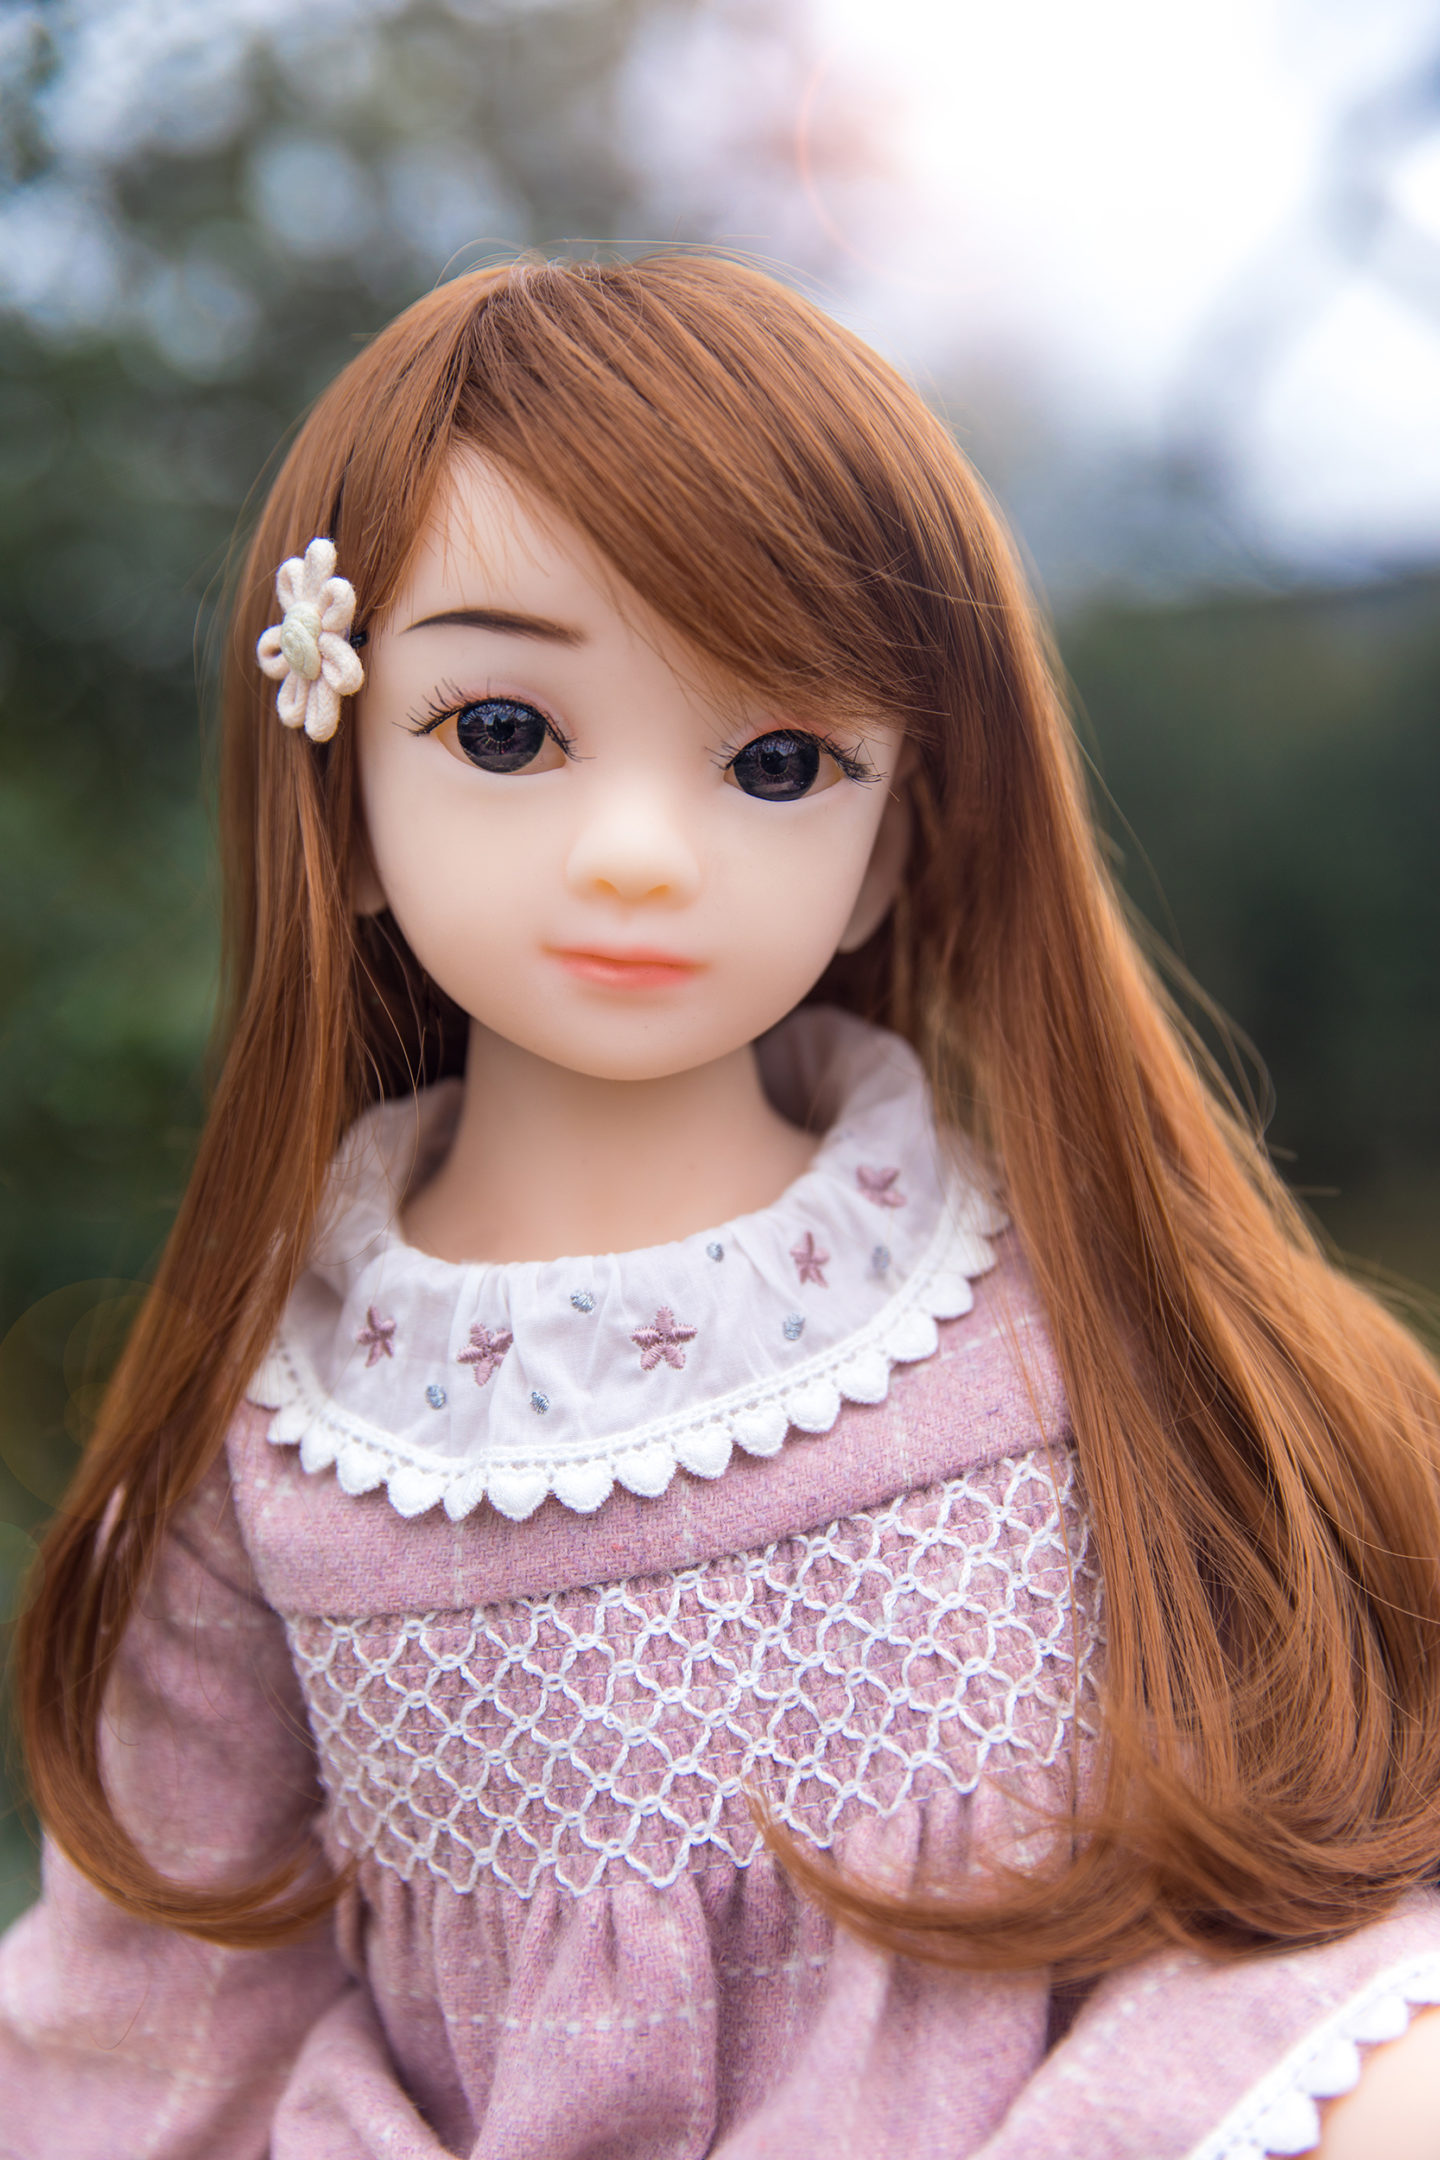 Joyce - Cutie Doll 2' 2 (65cm) Cup A